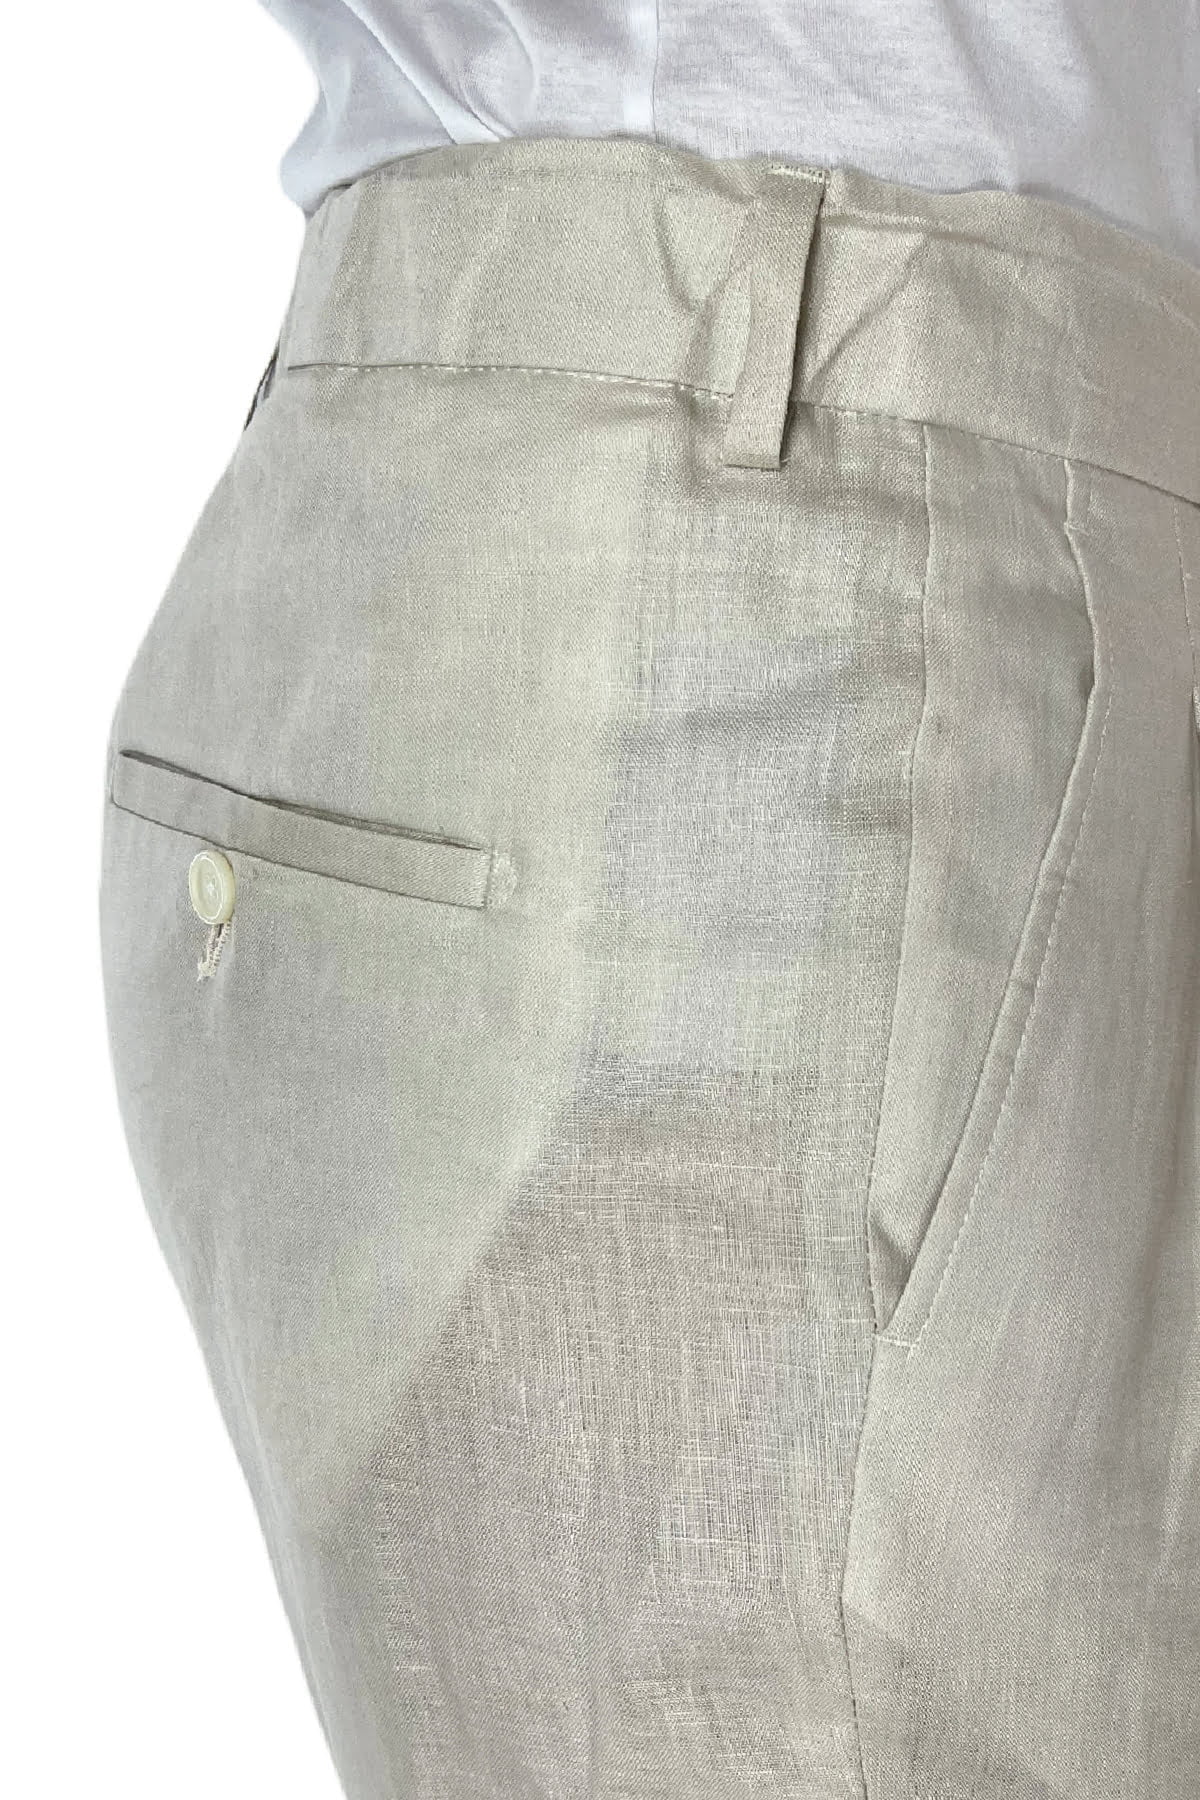 Pantalaccio uomo beige in lino e cotone tasca america con doppia pence e laccio in vita risvolto 4cm